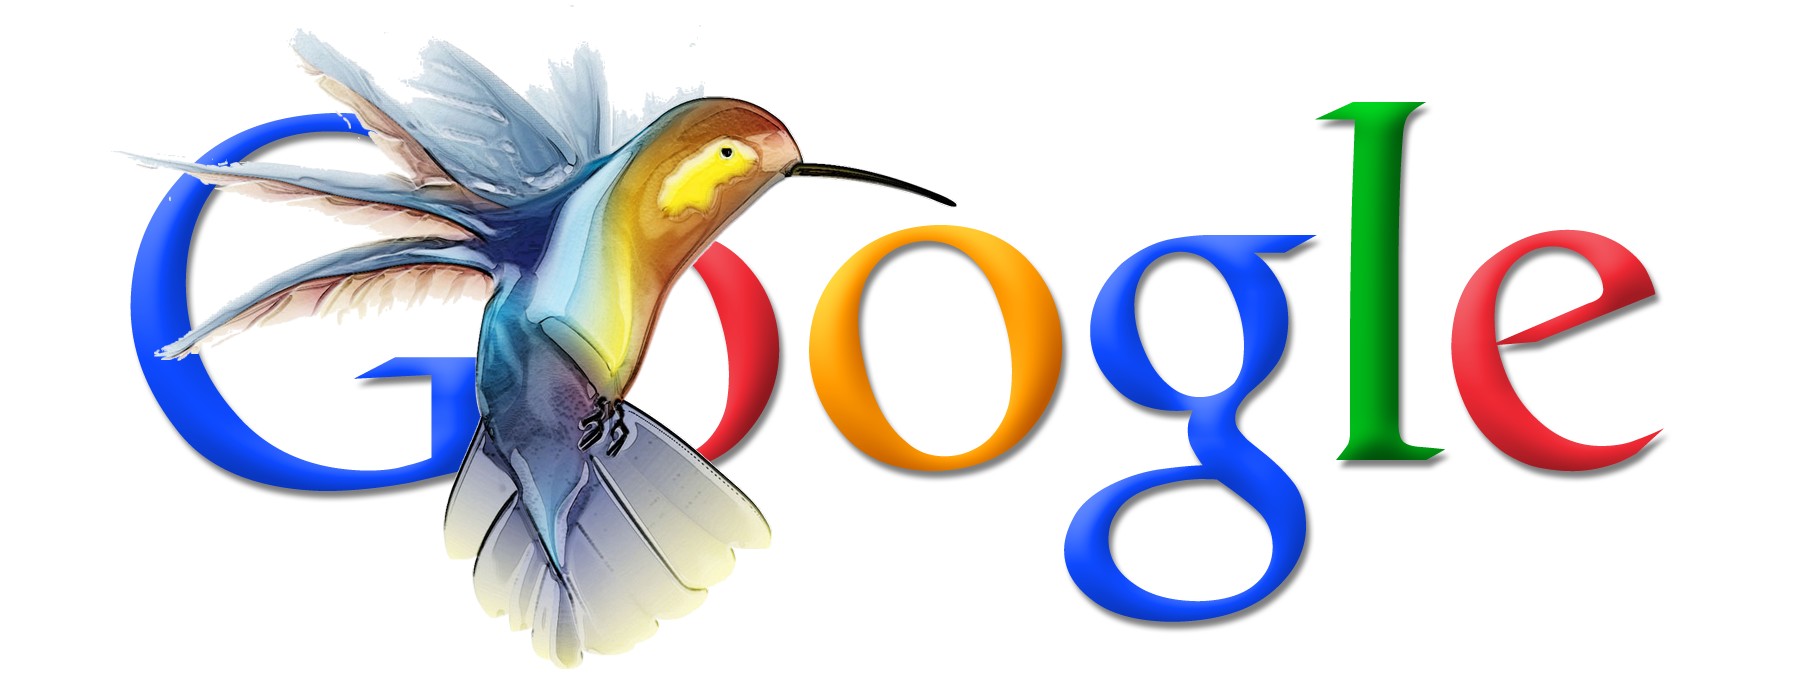 Google Colibri